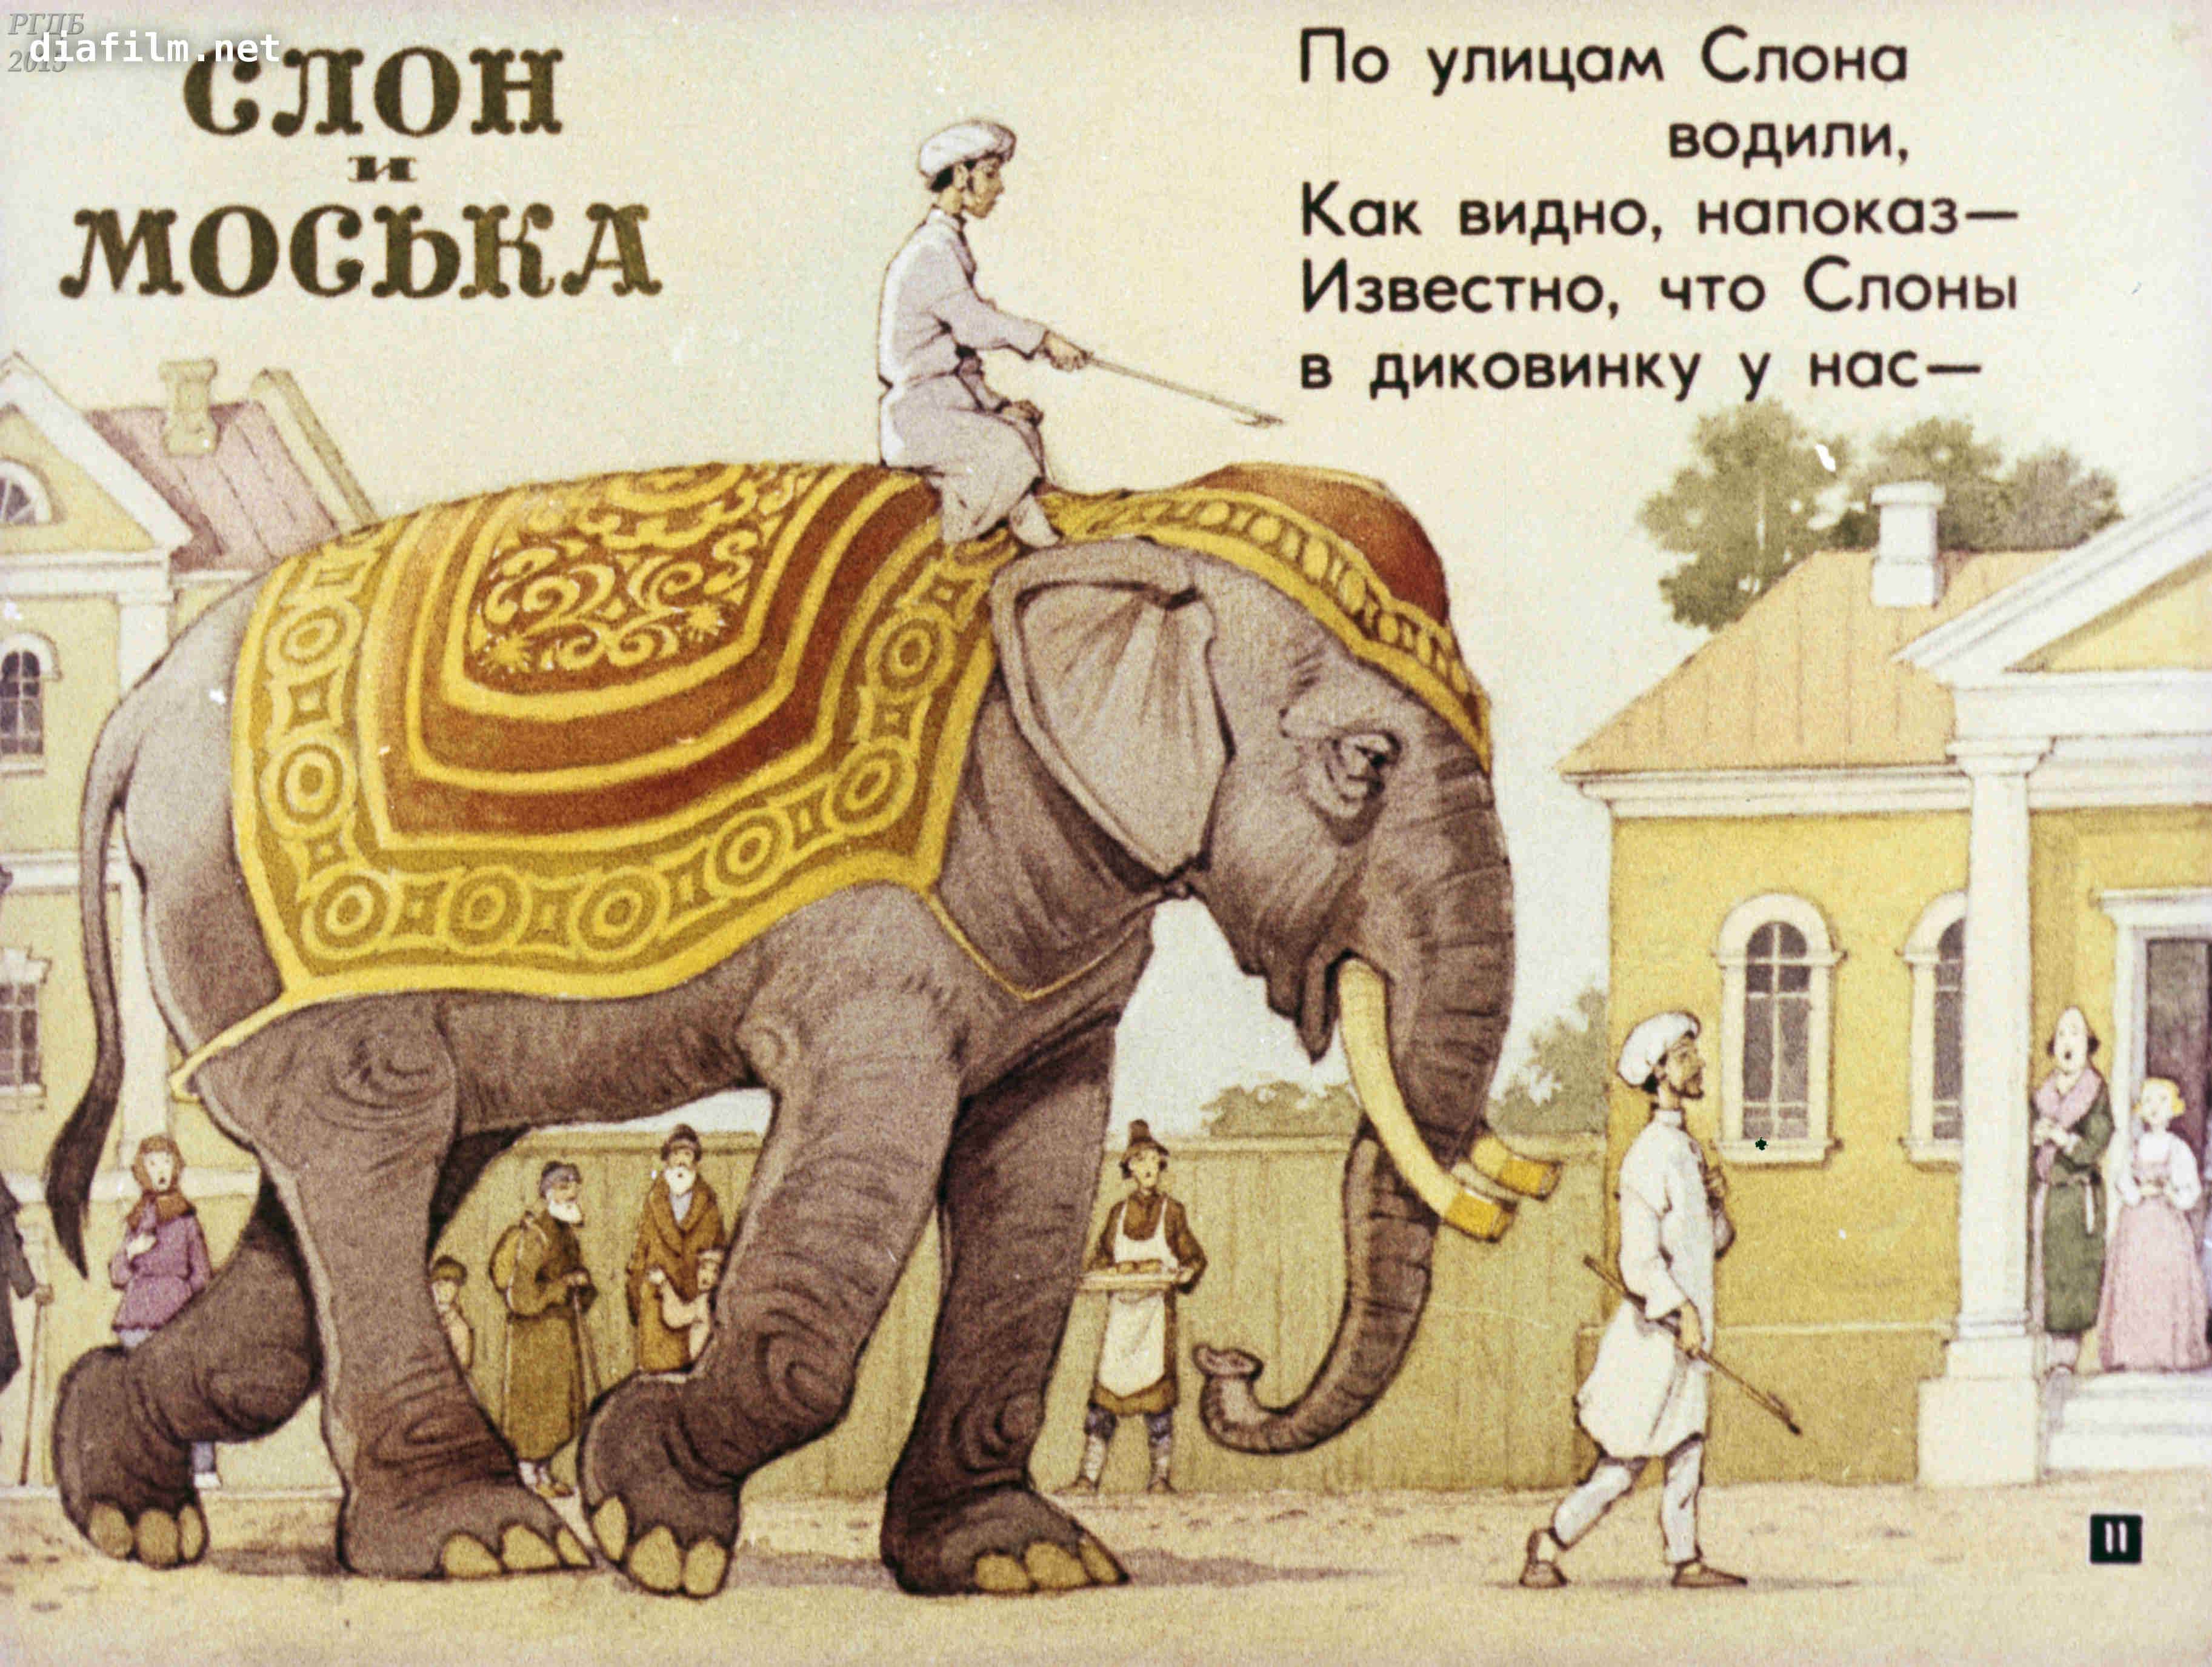 Читать про слона. Басня Крылова слон и моська. Басня слон и моська Крылов. Иллюстрация к басне Крылова слон и моська.